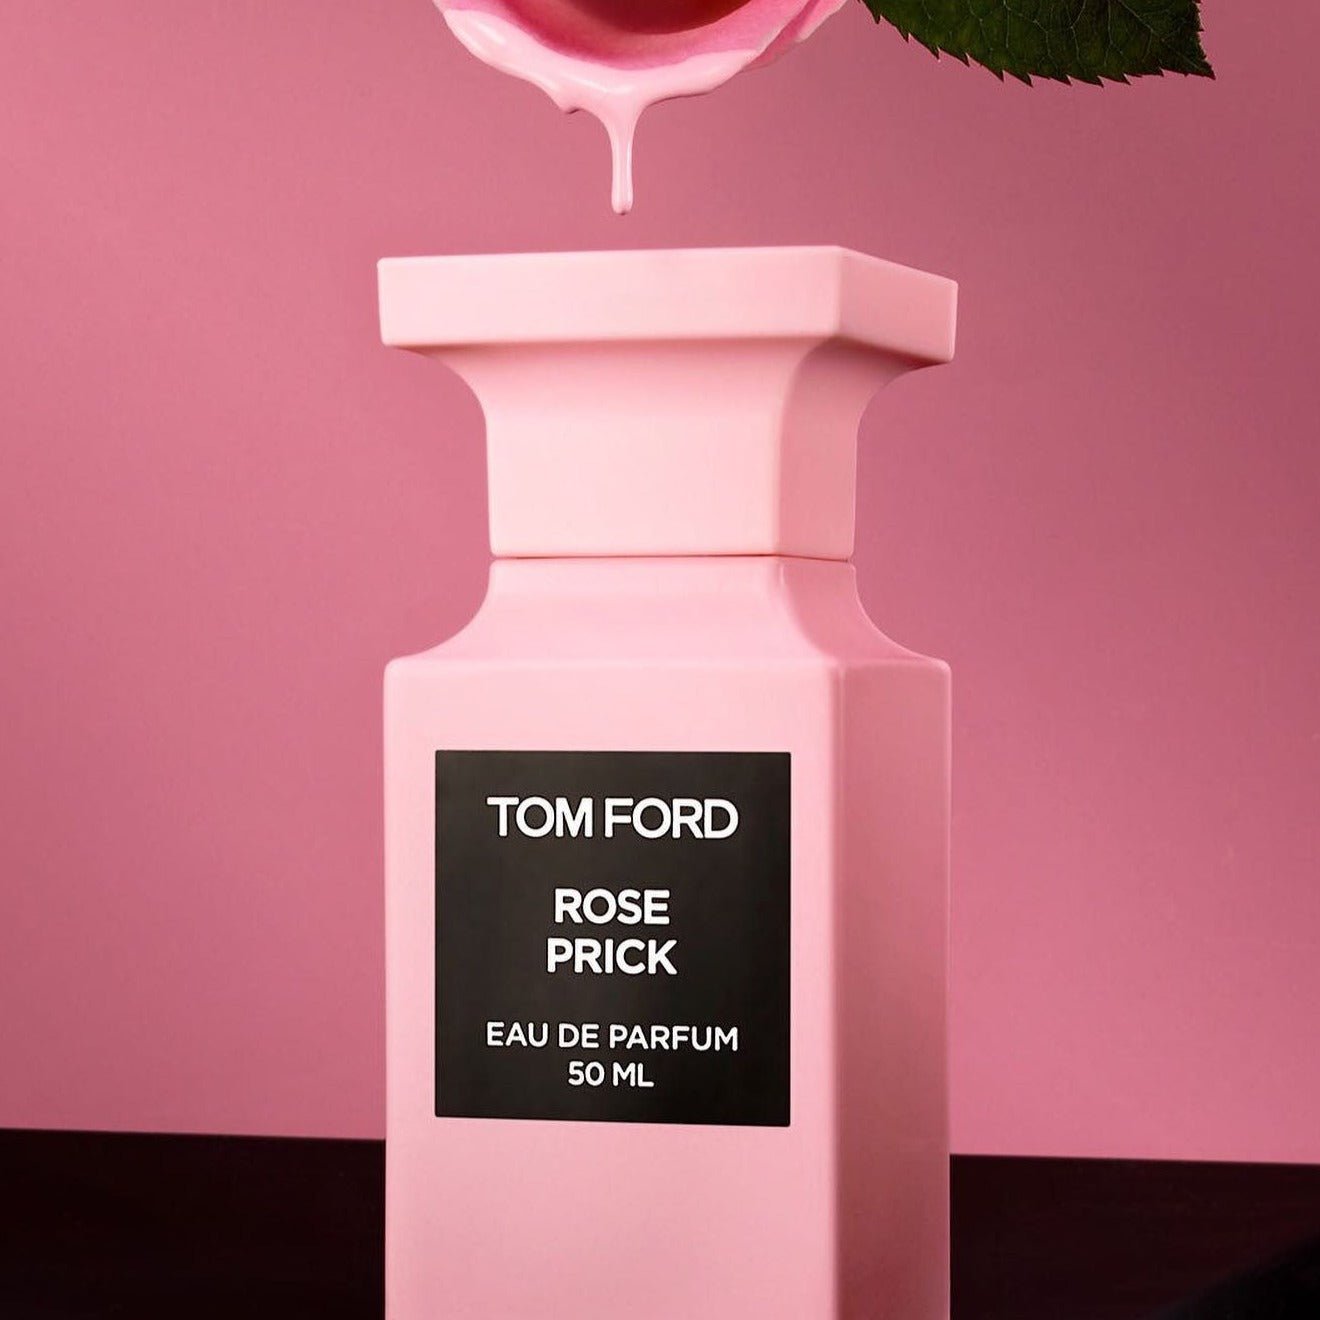 Tom Ford Rose Prick All Over Body Spray | My Perfume Shop Australia